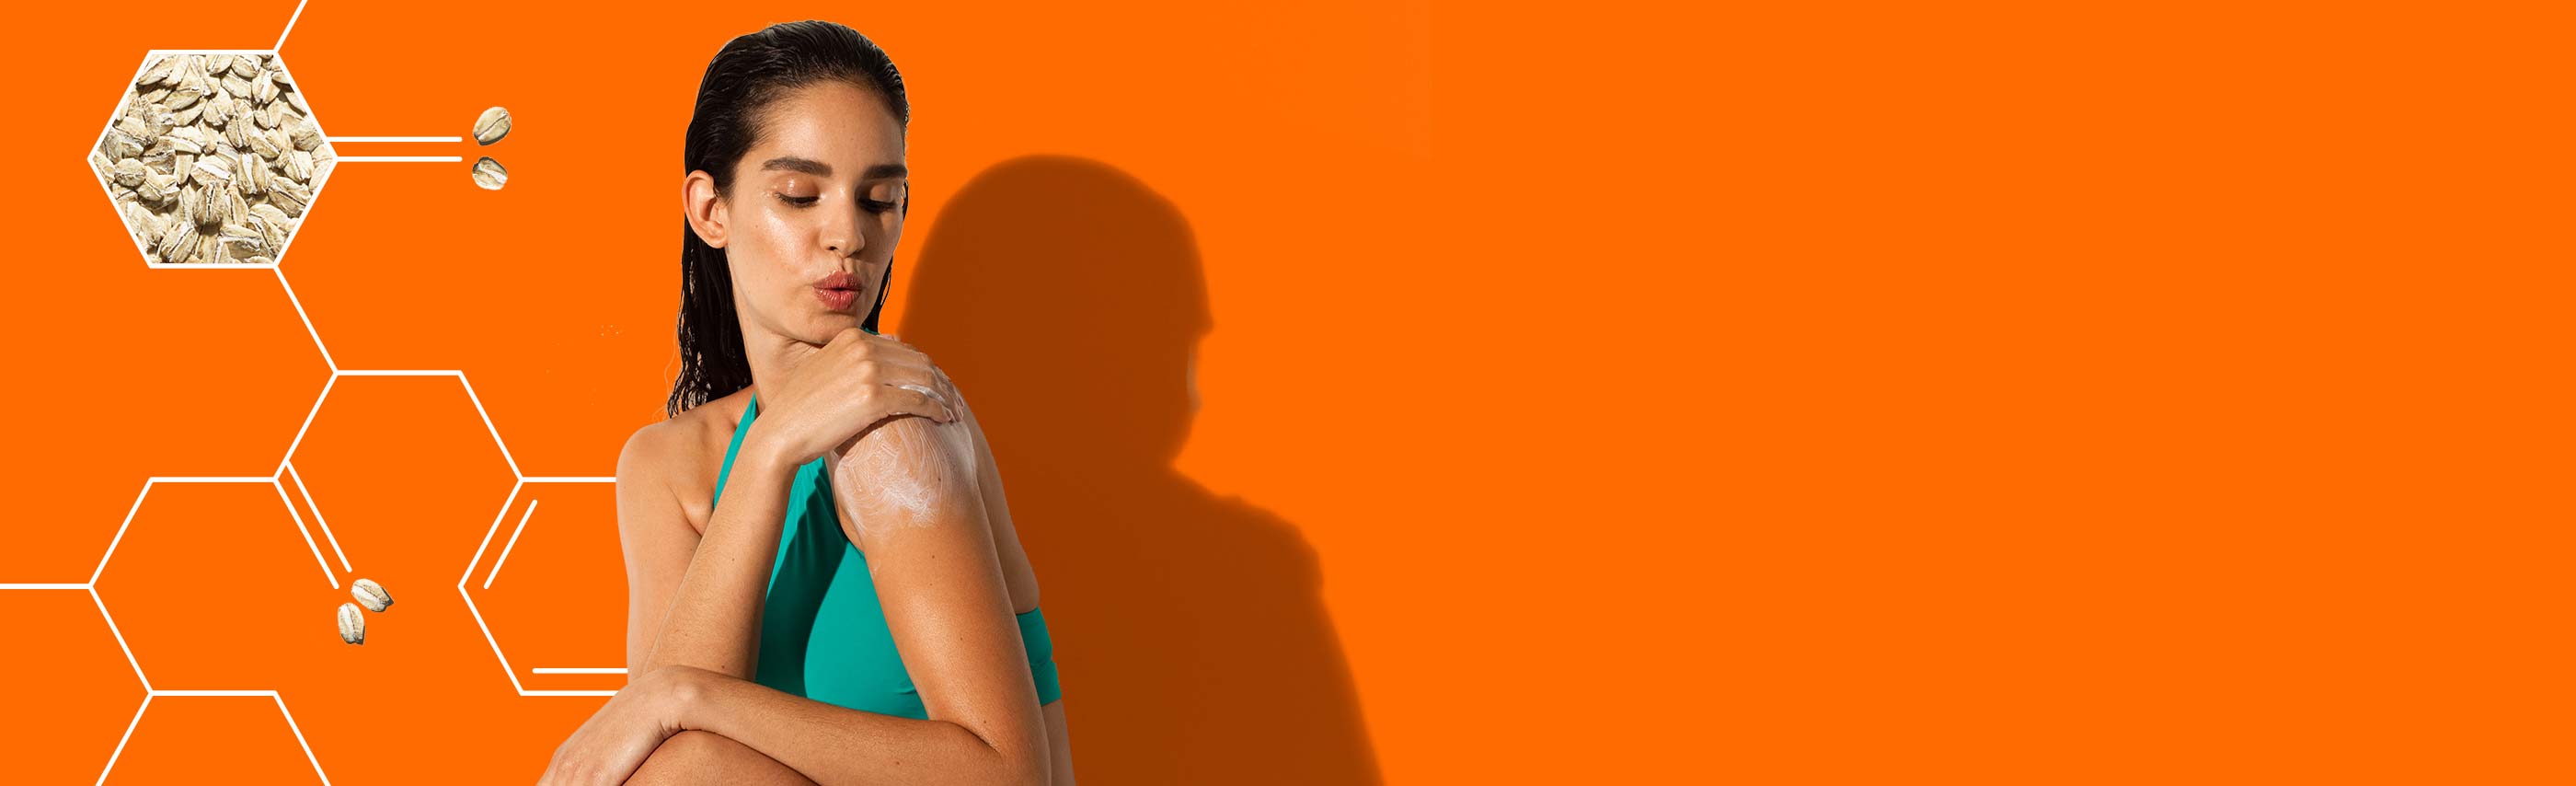 femme appliquant une lotion solaire aveeno sur son épaule sur fond orange vif